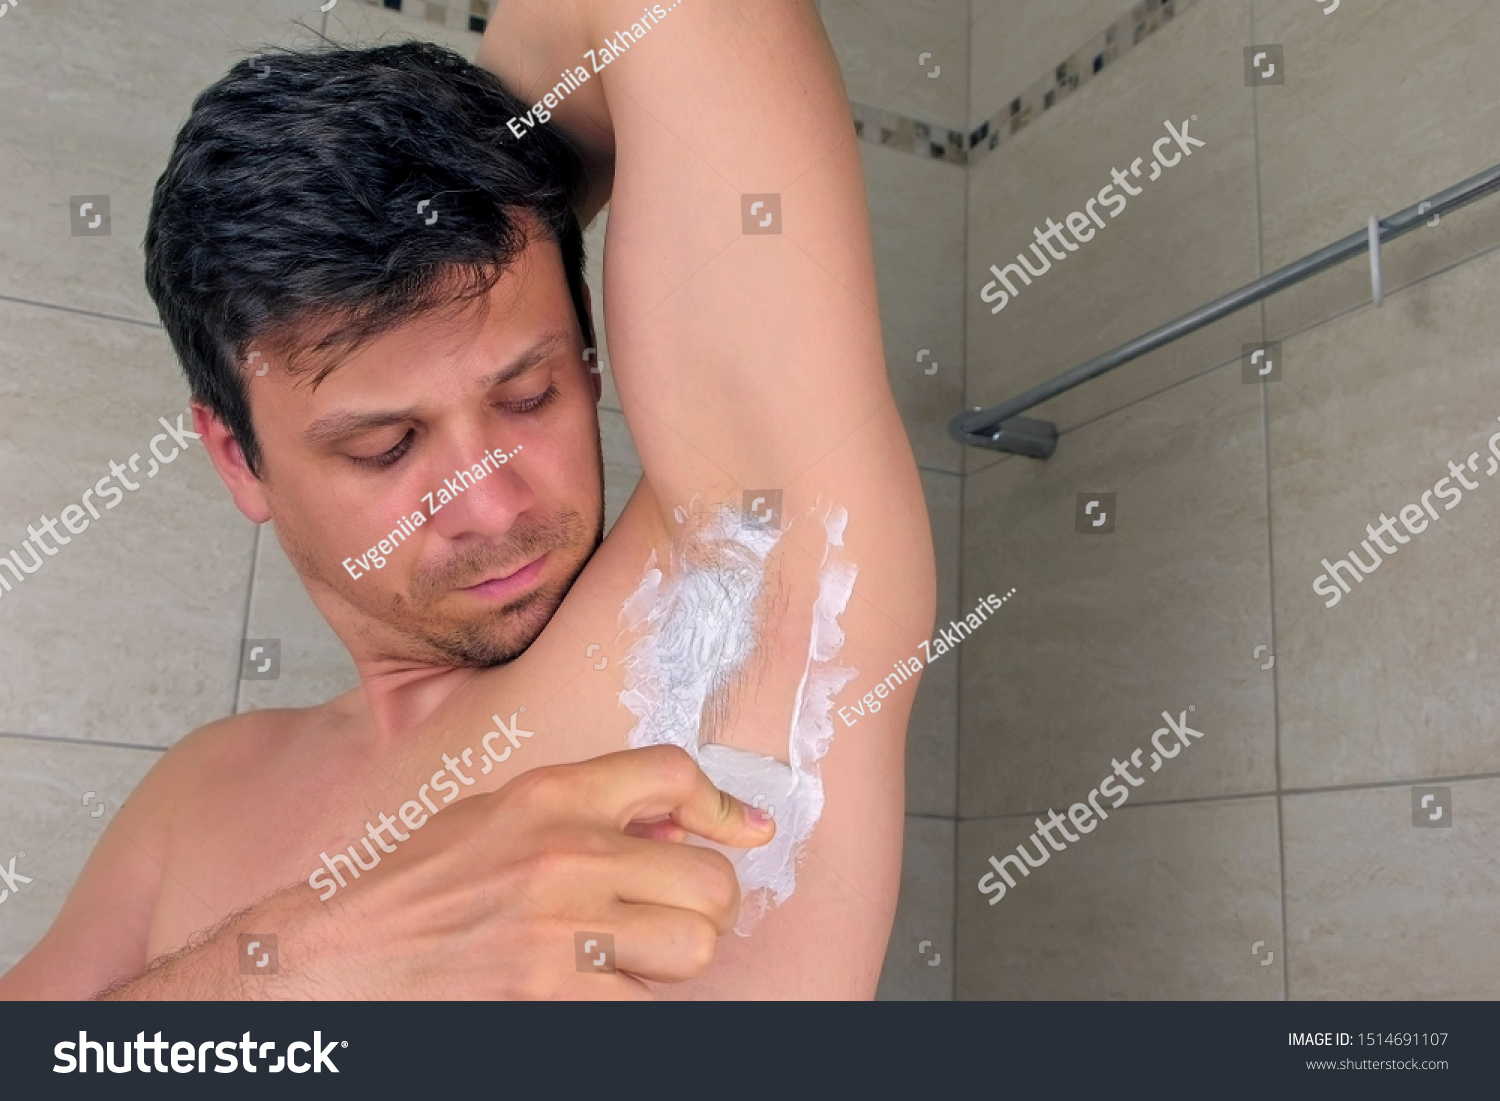 брить или не брить мужчине член фото 43